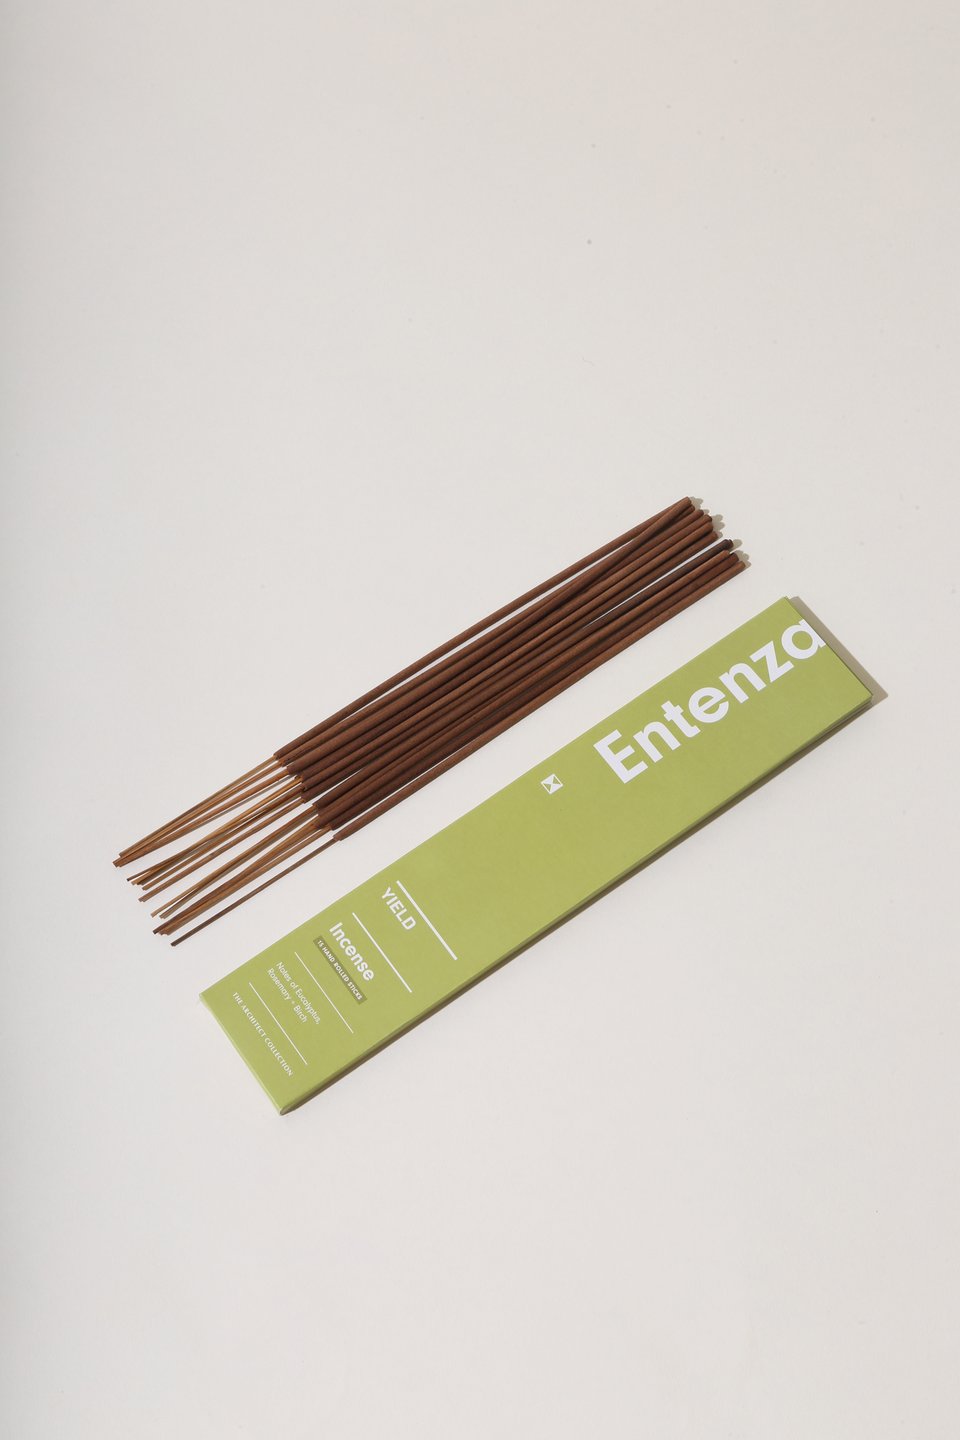 Entenza Incense - Eucalyptus, Rosemary & Birch